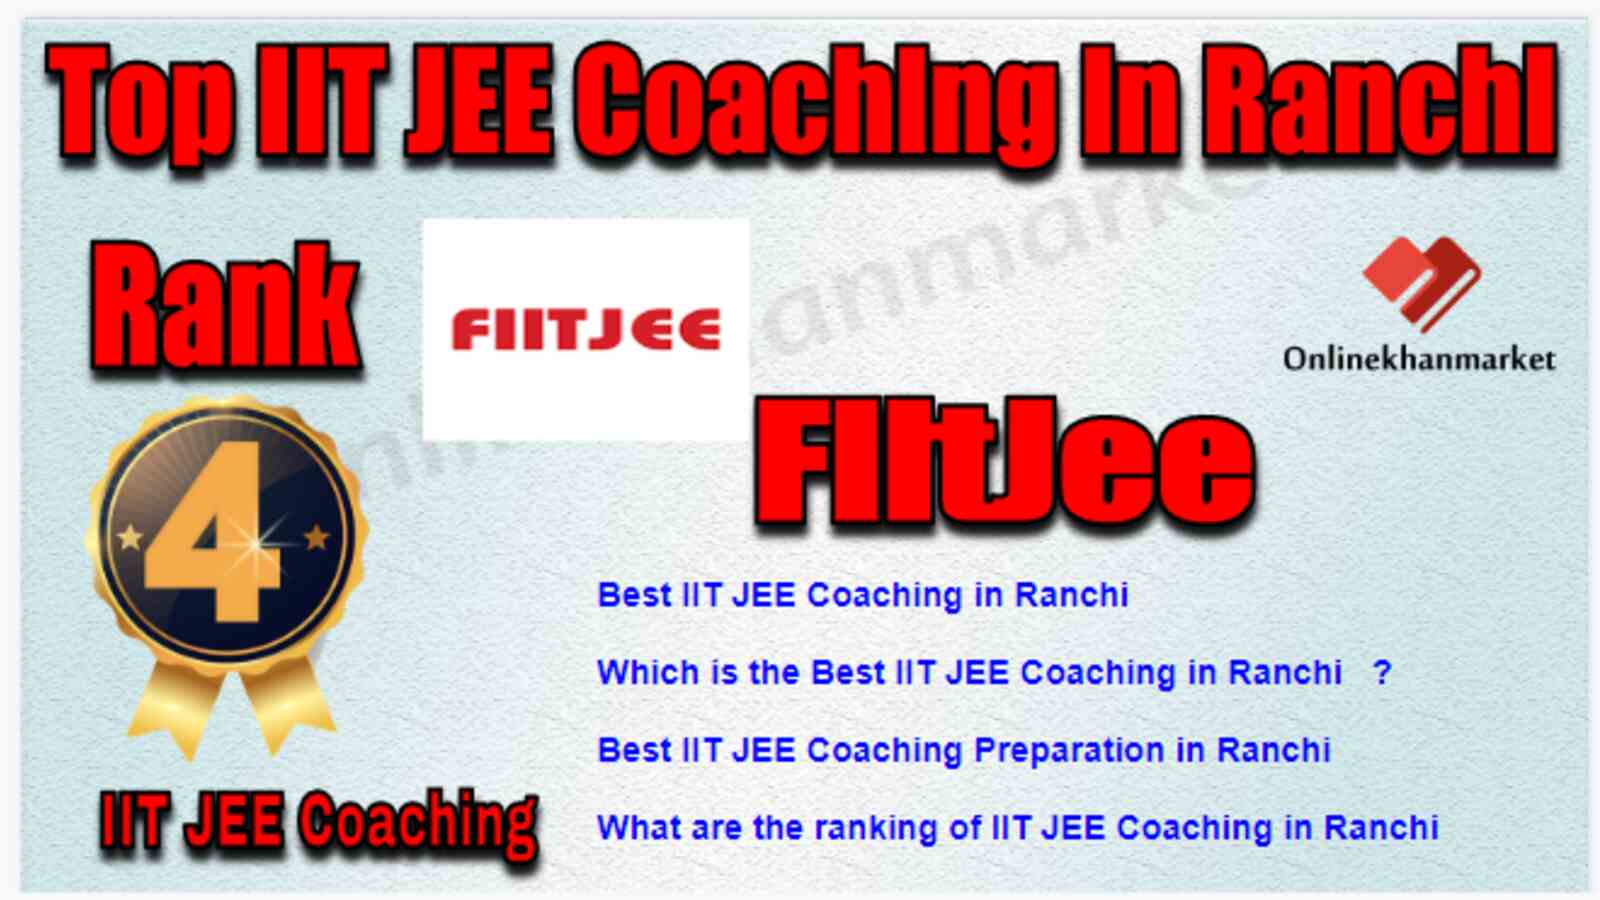 Rank 4 Best IIT JEE Coaching in Ranchi